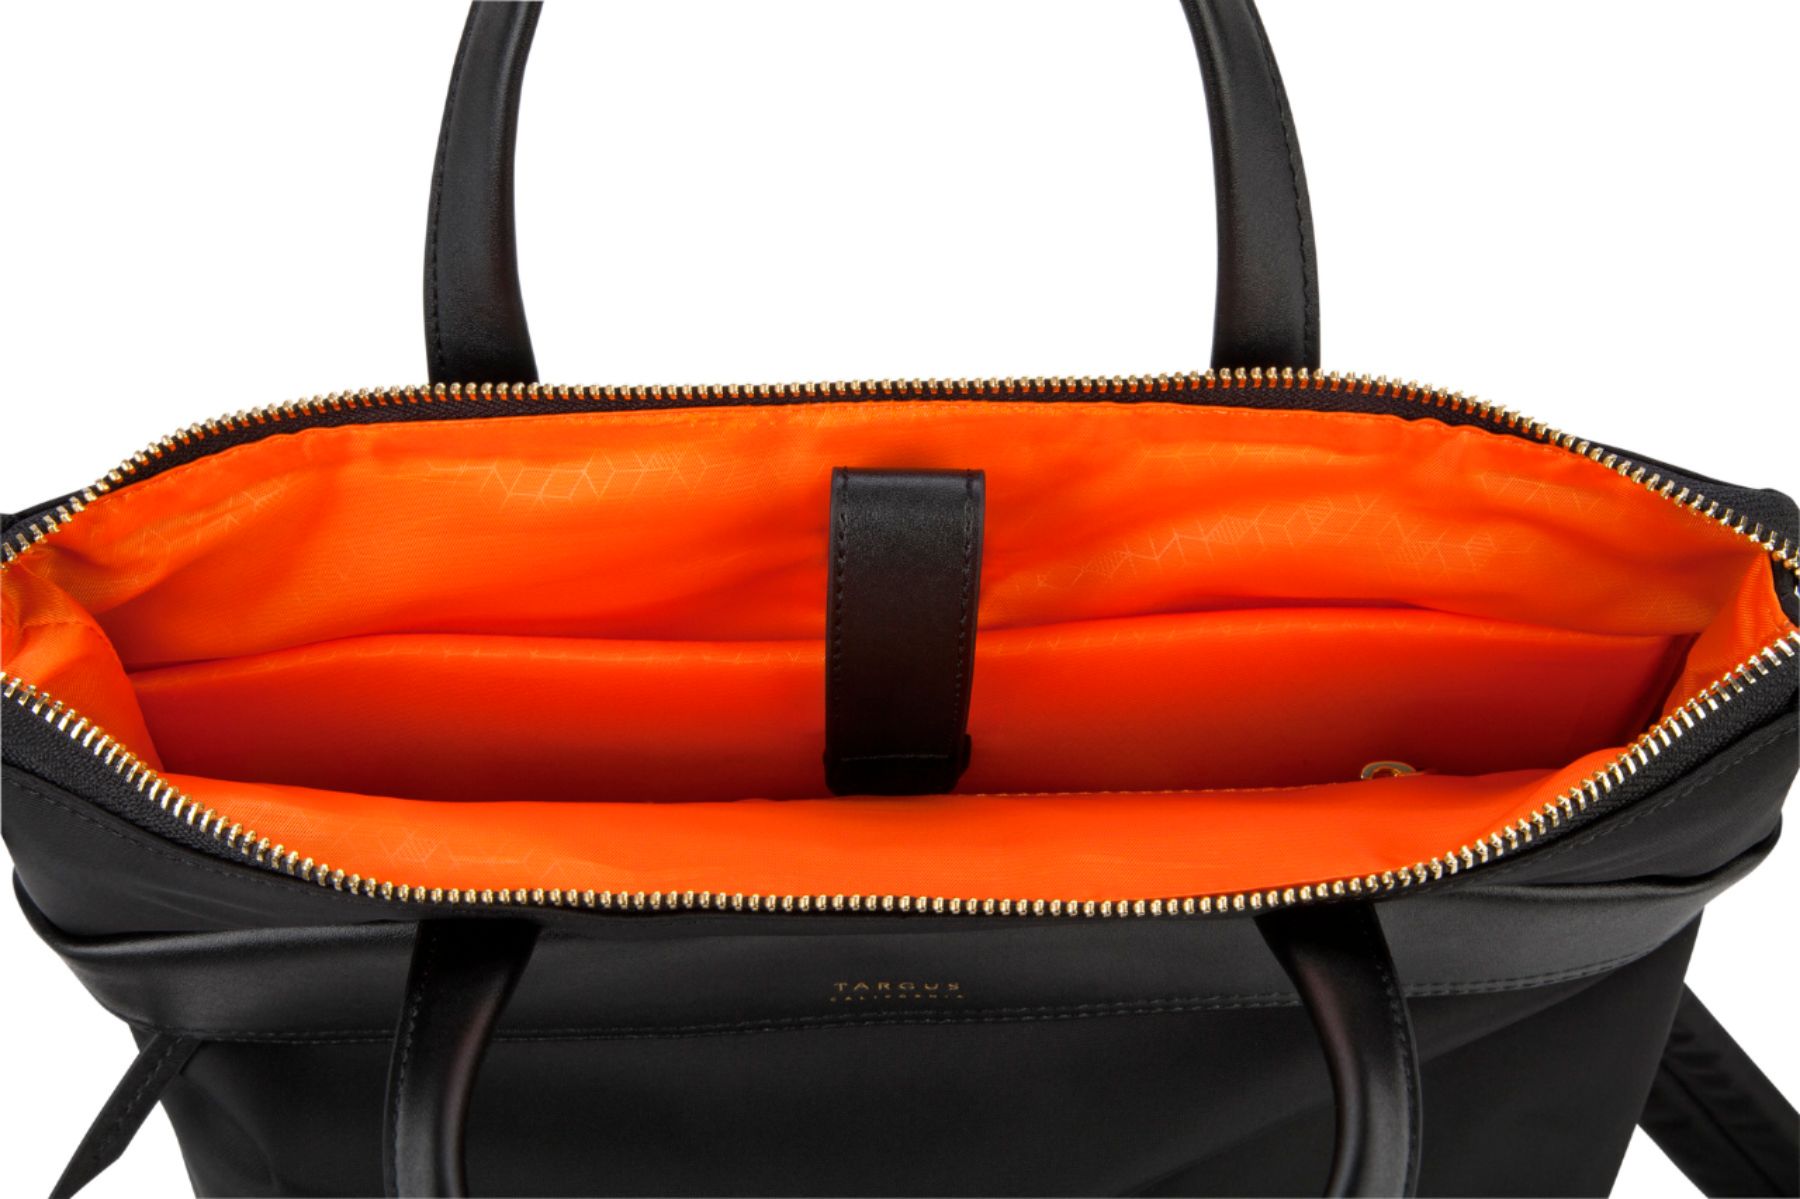 Best Buy: Targus Newport Backpack for 15 Laptops Olive TSB94502BT